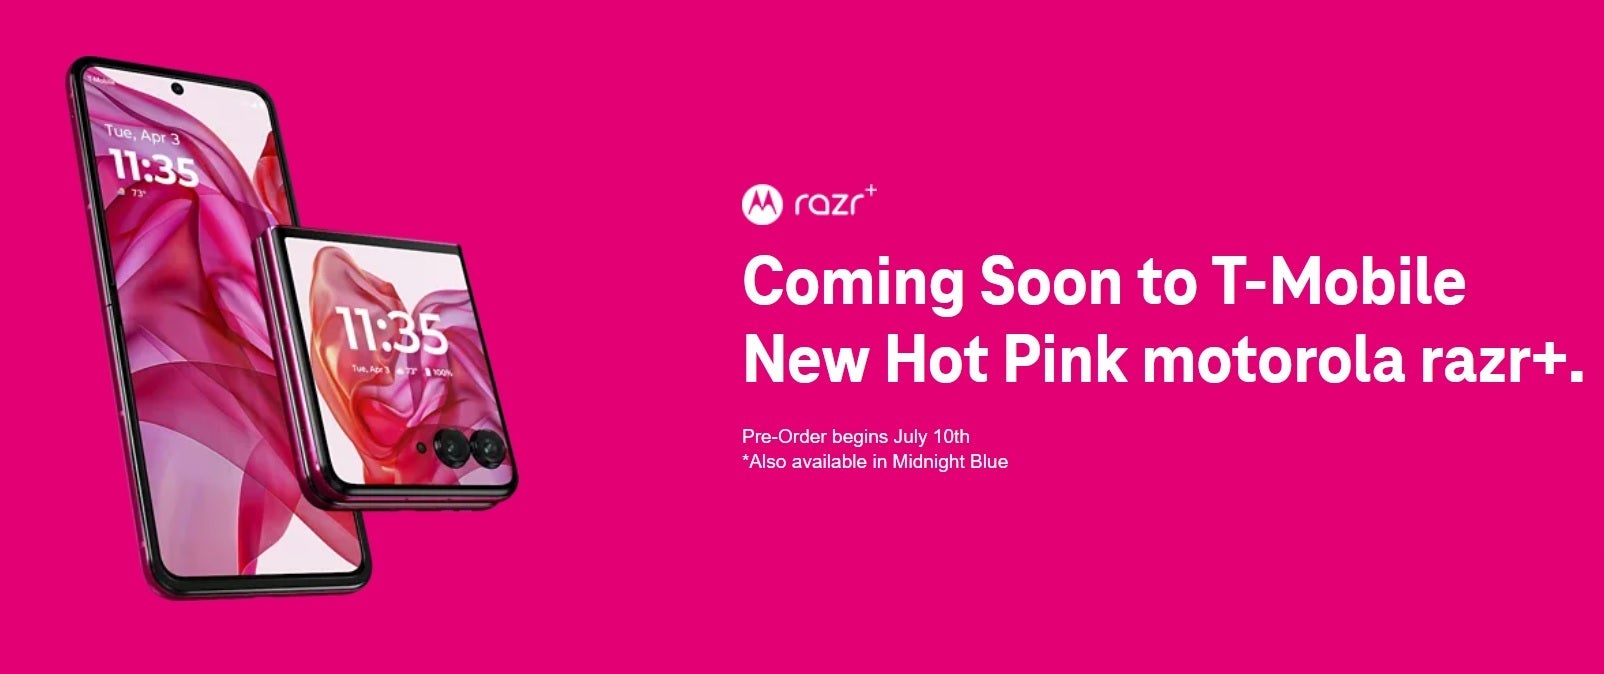 Obtenez le nouveau Razr+ dans Hot Pick exclusivement auprès de T-Mobile - Hot Pink Motorola Razr+ (2024) sera disponible exclusivement auprès de T-Mobile